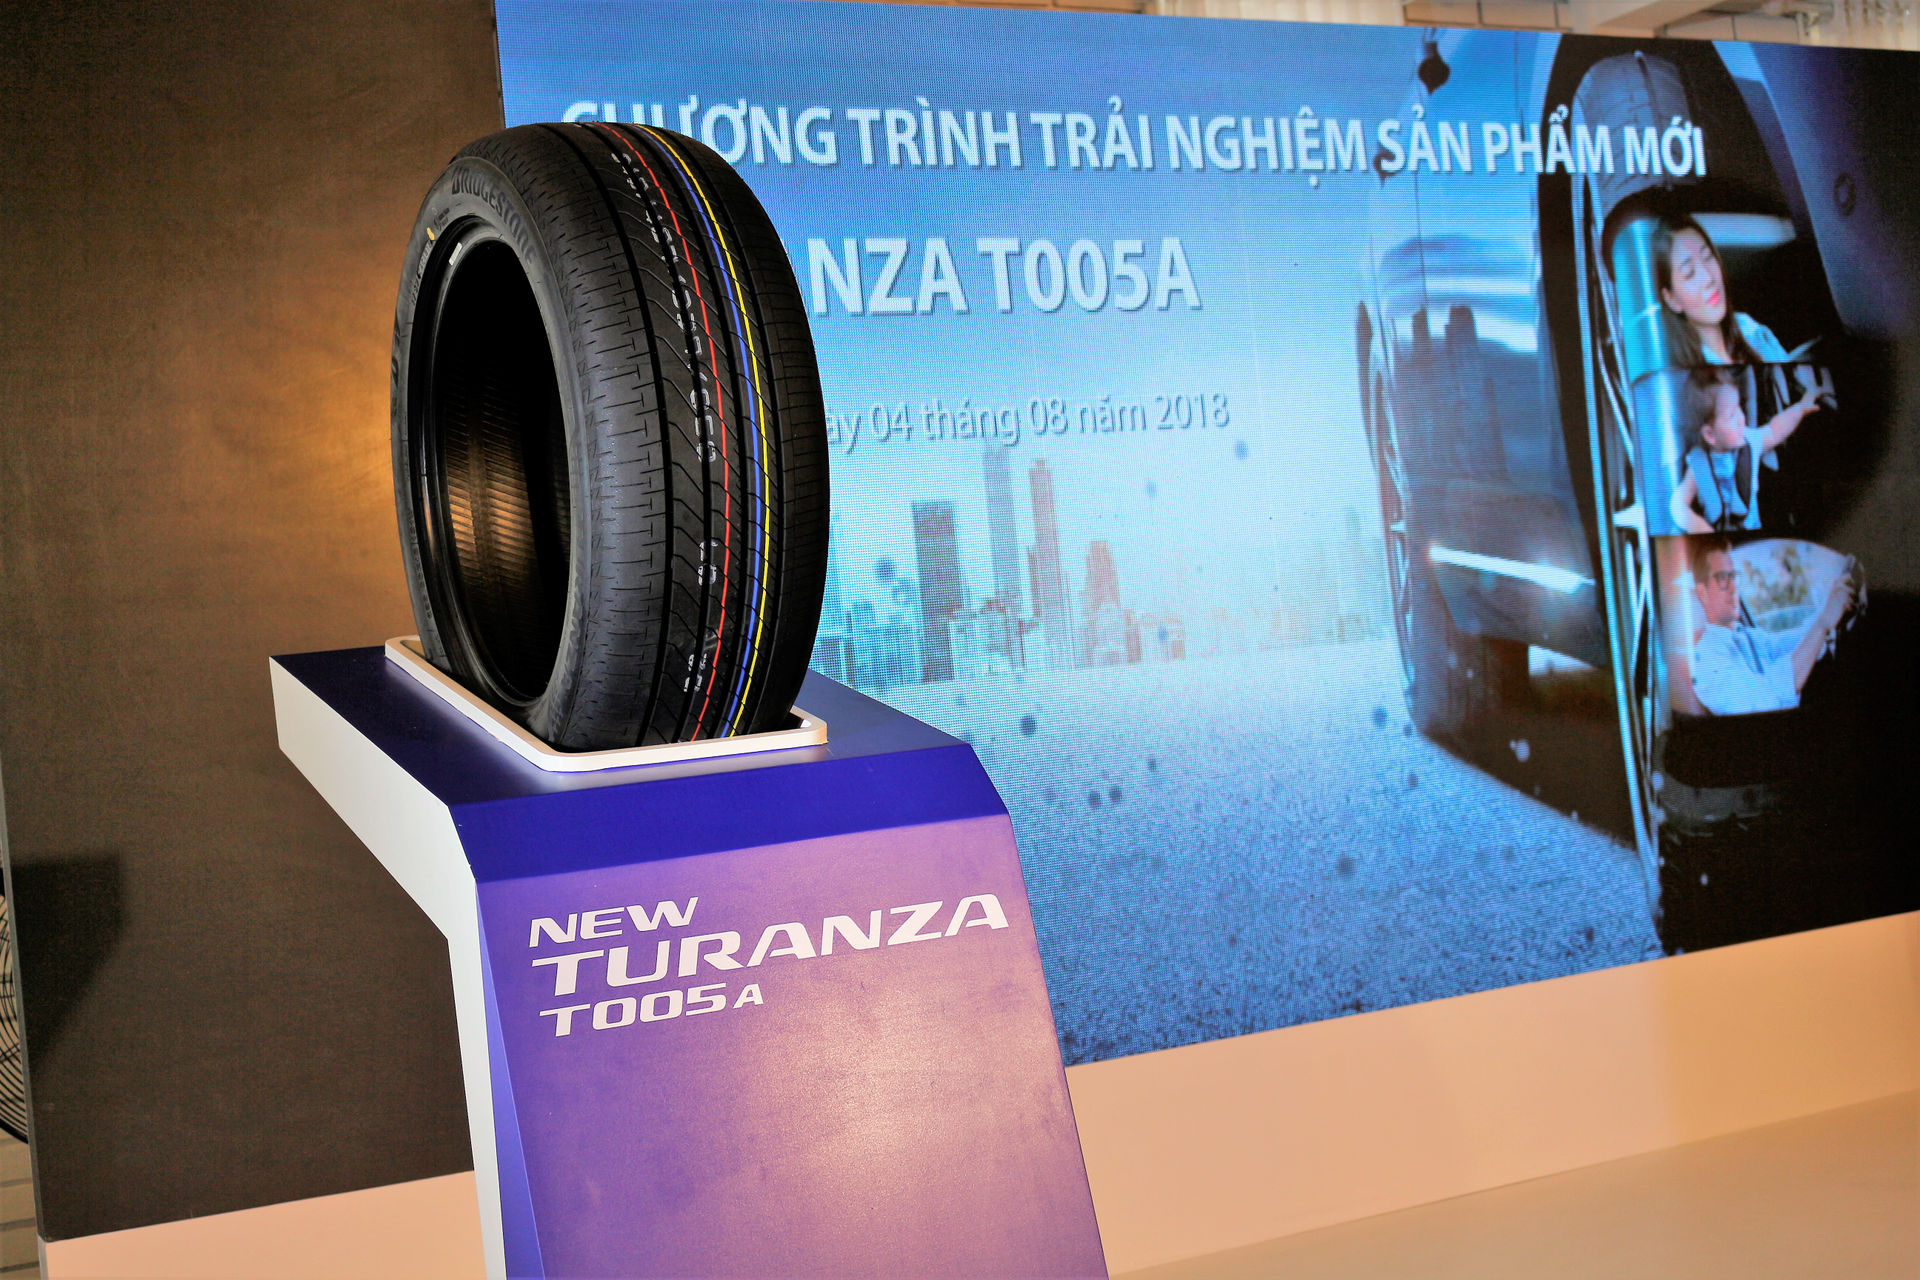 T005A được định hình là phiên bản Turanza mới khi trước dó dòng GR 100 đã được Bridgestone bán tại Việt Nam với giá khoảng 2,6 triệu đồng/chiếc.